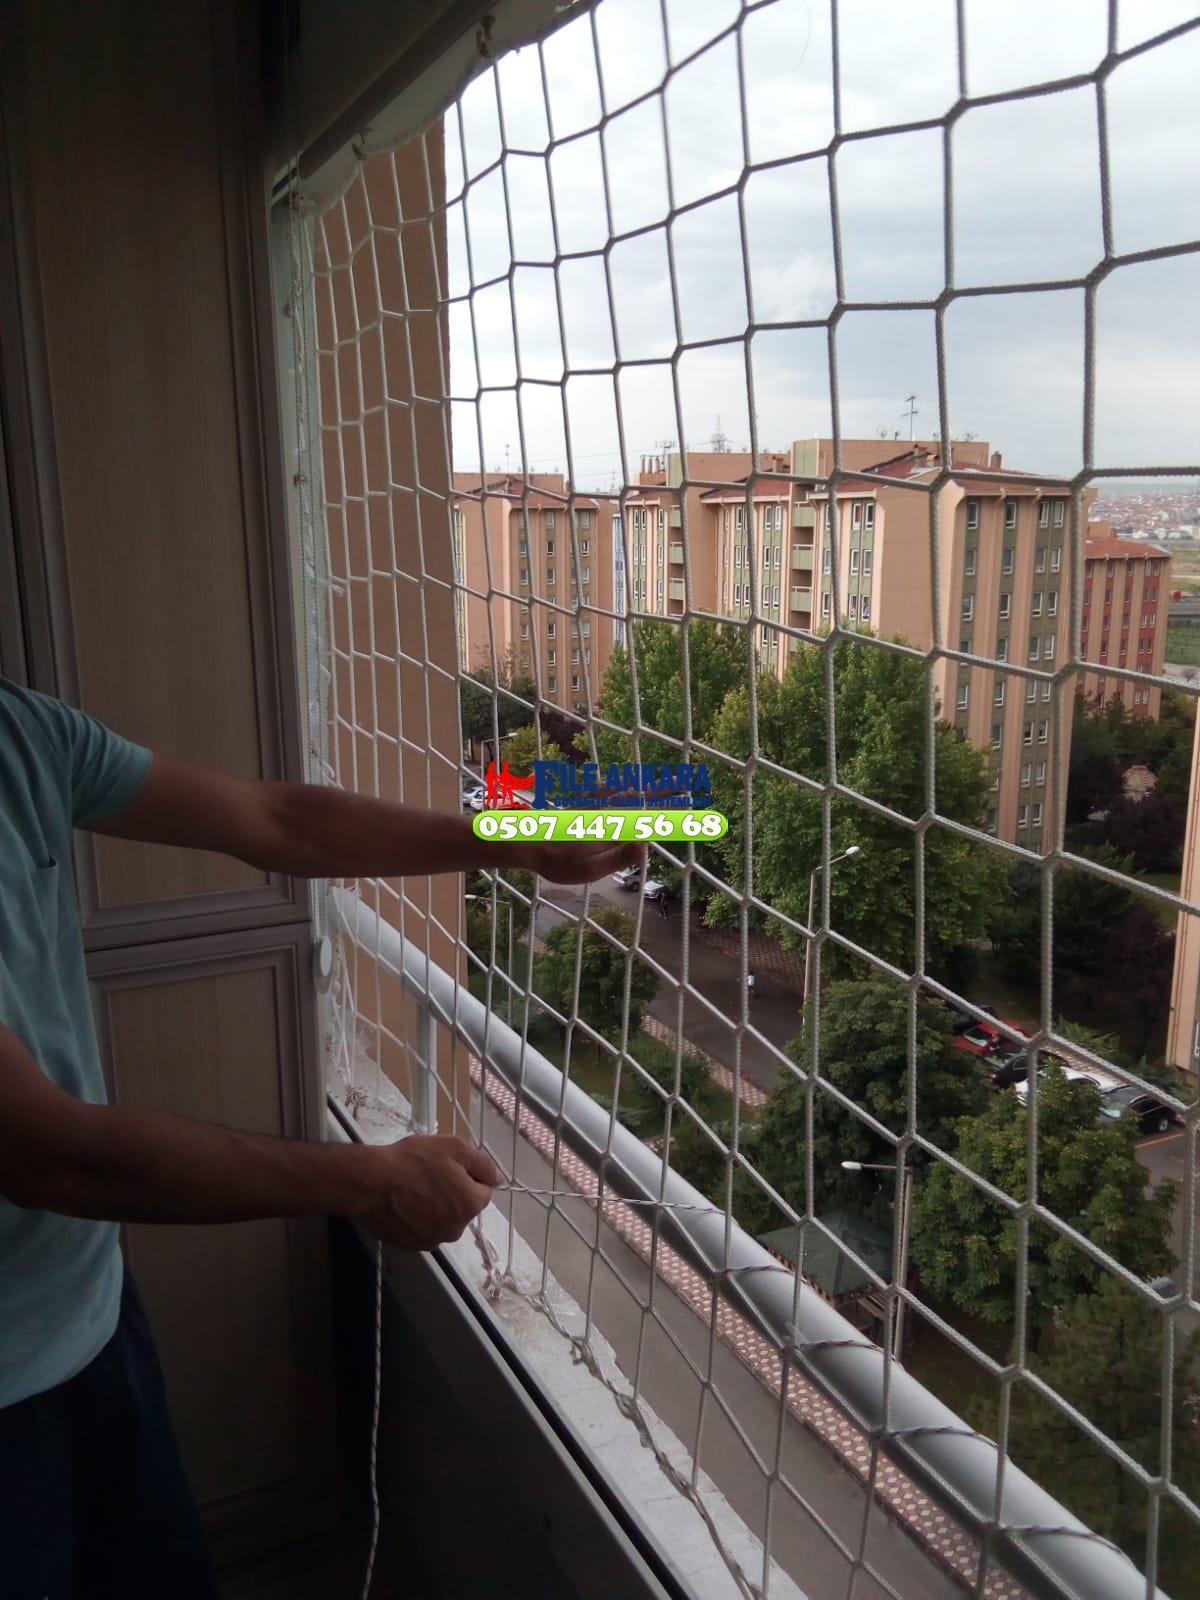 Çorum  Balkon  koruma filesi - Merdiven filesi - En ucuz balkon güvenlik filesi satış ve montajı 0507 447 56 68